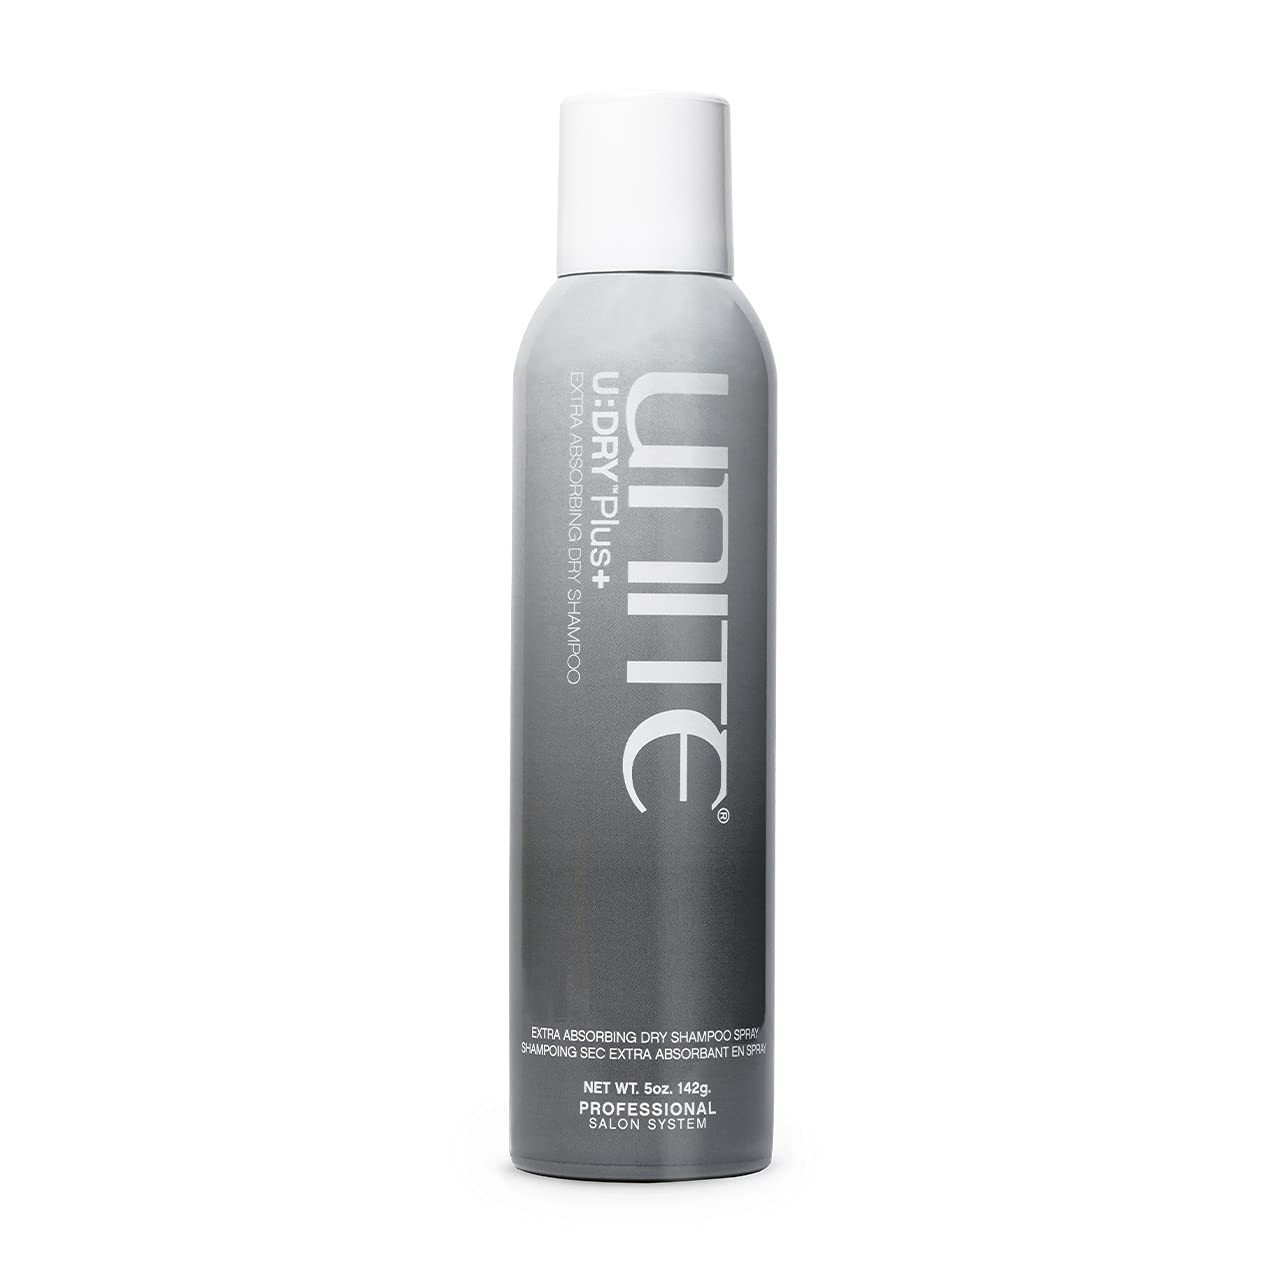 Unite U:DRY Plus+ Extra Absorbing Dry Shampoo 5oz - $41.50